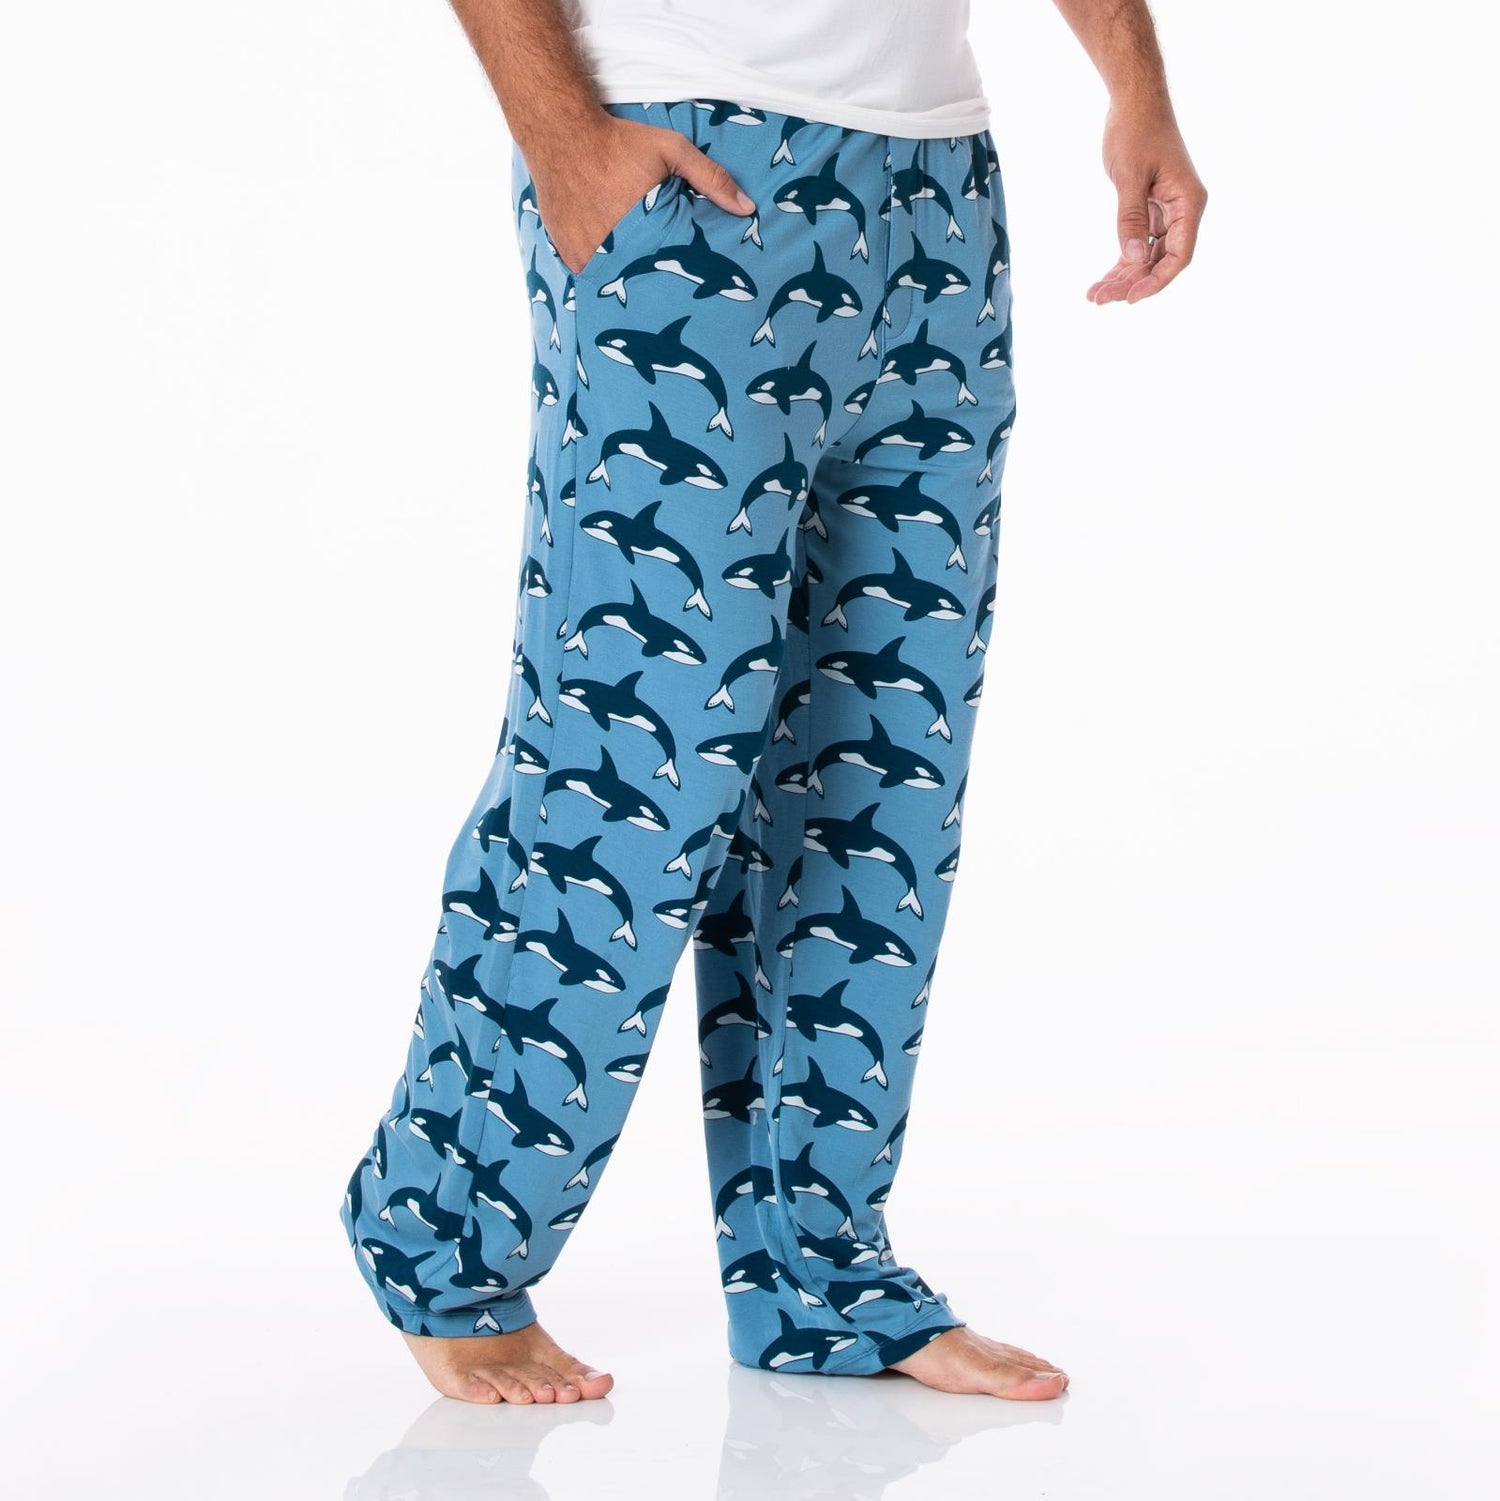 Men's Print Pajama Pants in Parisian Blue Orca